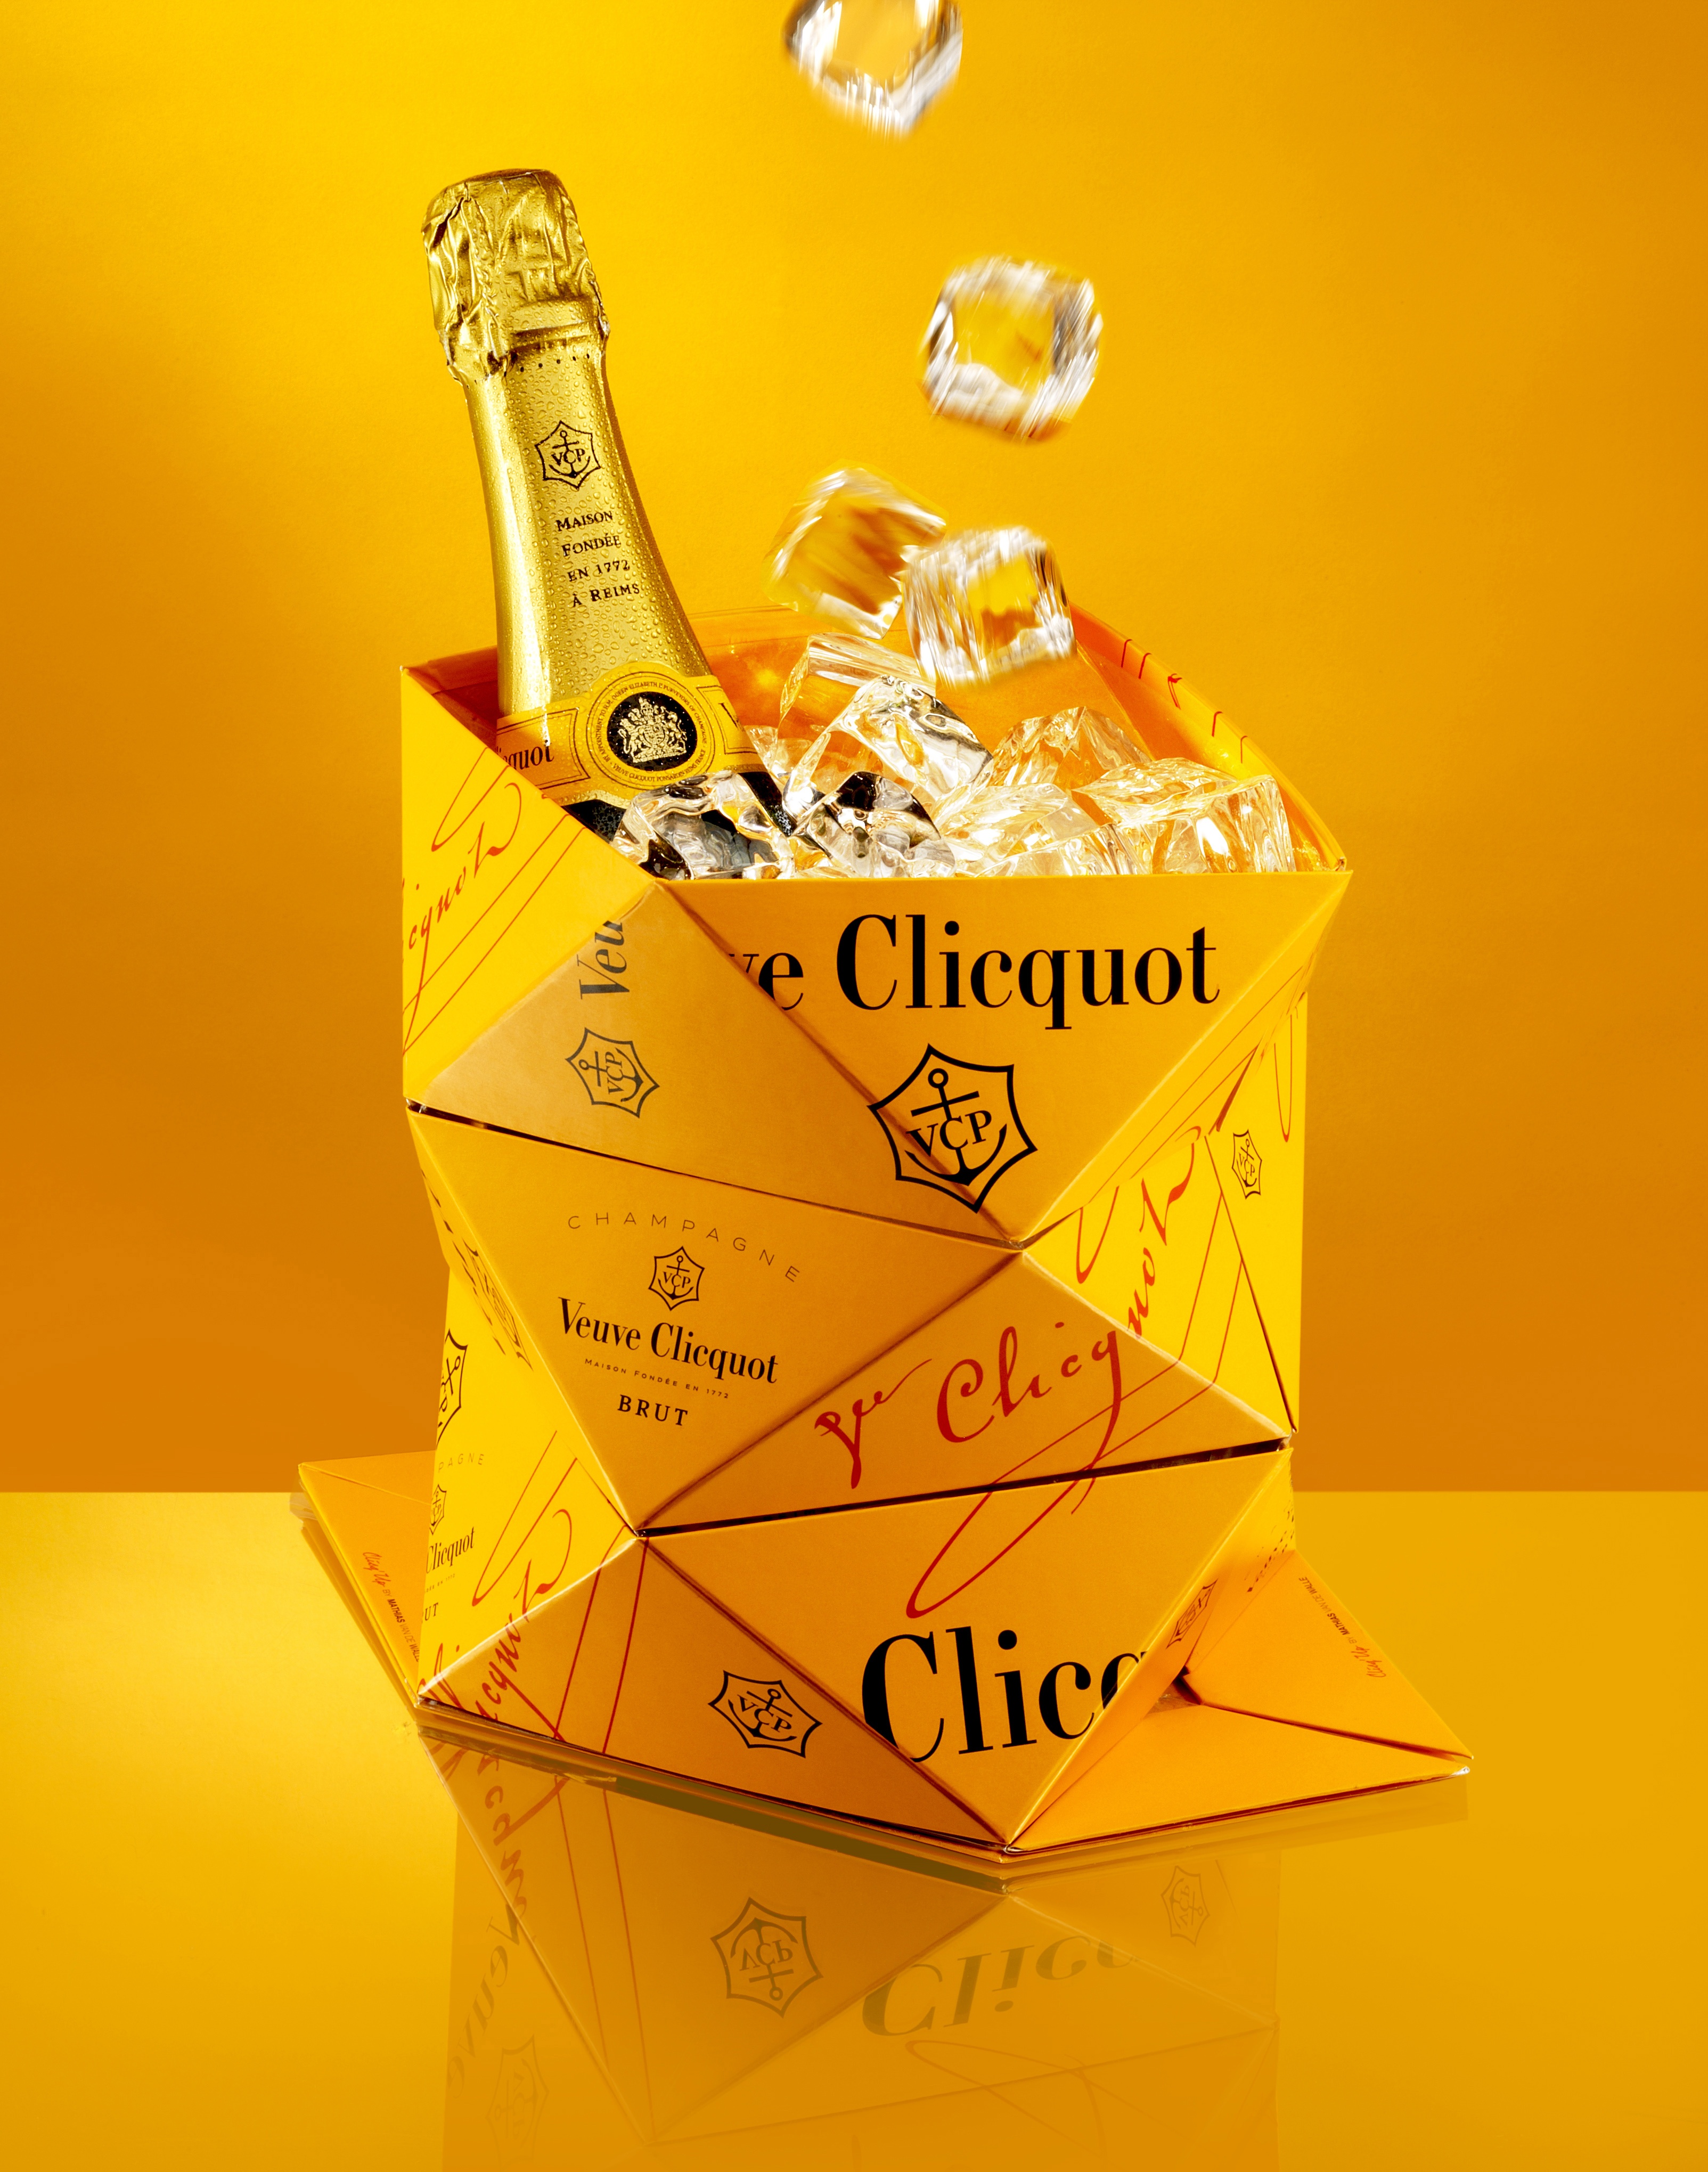 Num fundo todo amarelo ouro, temos um Balde de gelo, em forma de dobradura triangular, na cor amarelo ouro, classico da Champanhe Veuve Clicquot. Dentro dele um garrafa da champanhe fechada e muito gelo.